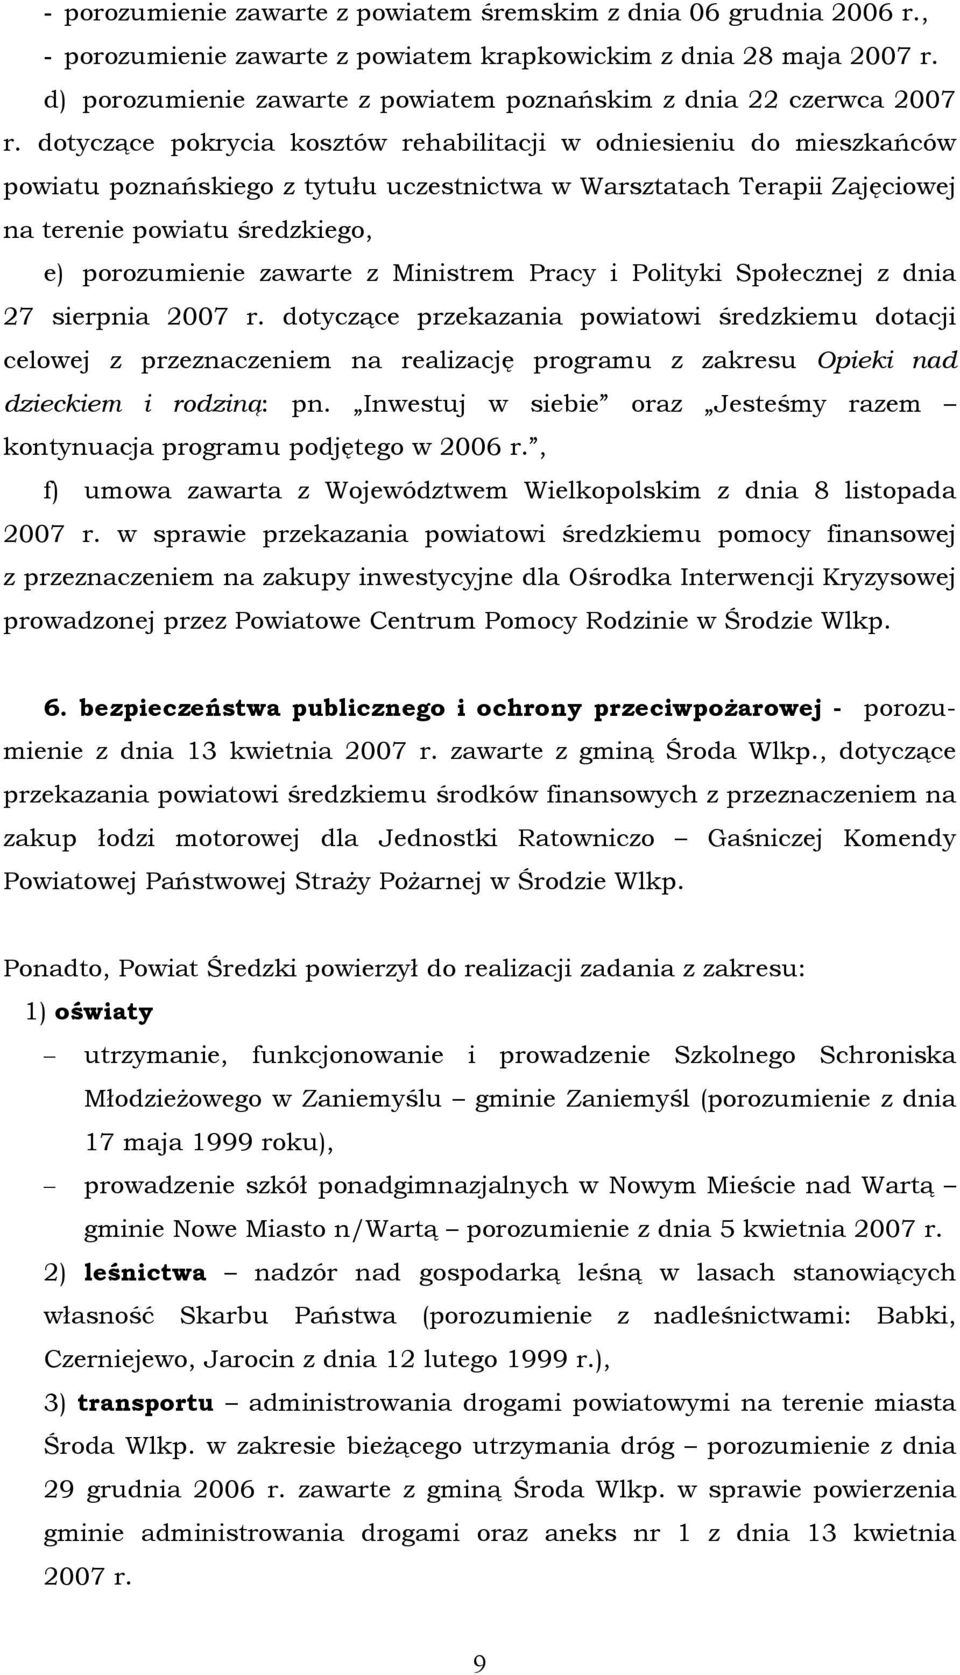 dotyczące pokrycia kosztäw rehabilitacji w odniesieniu do mieszkańcäw powiatu poznańskiego z tytułu uczestnictwa w Warsztatach Terapii Zajęciowej na terenie powiatu średzkiego, e) porozumienie